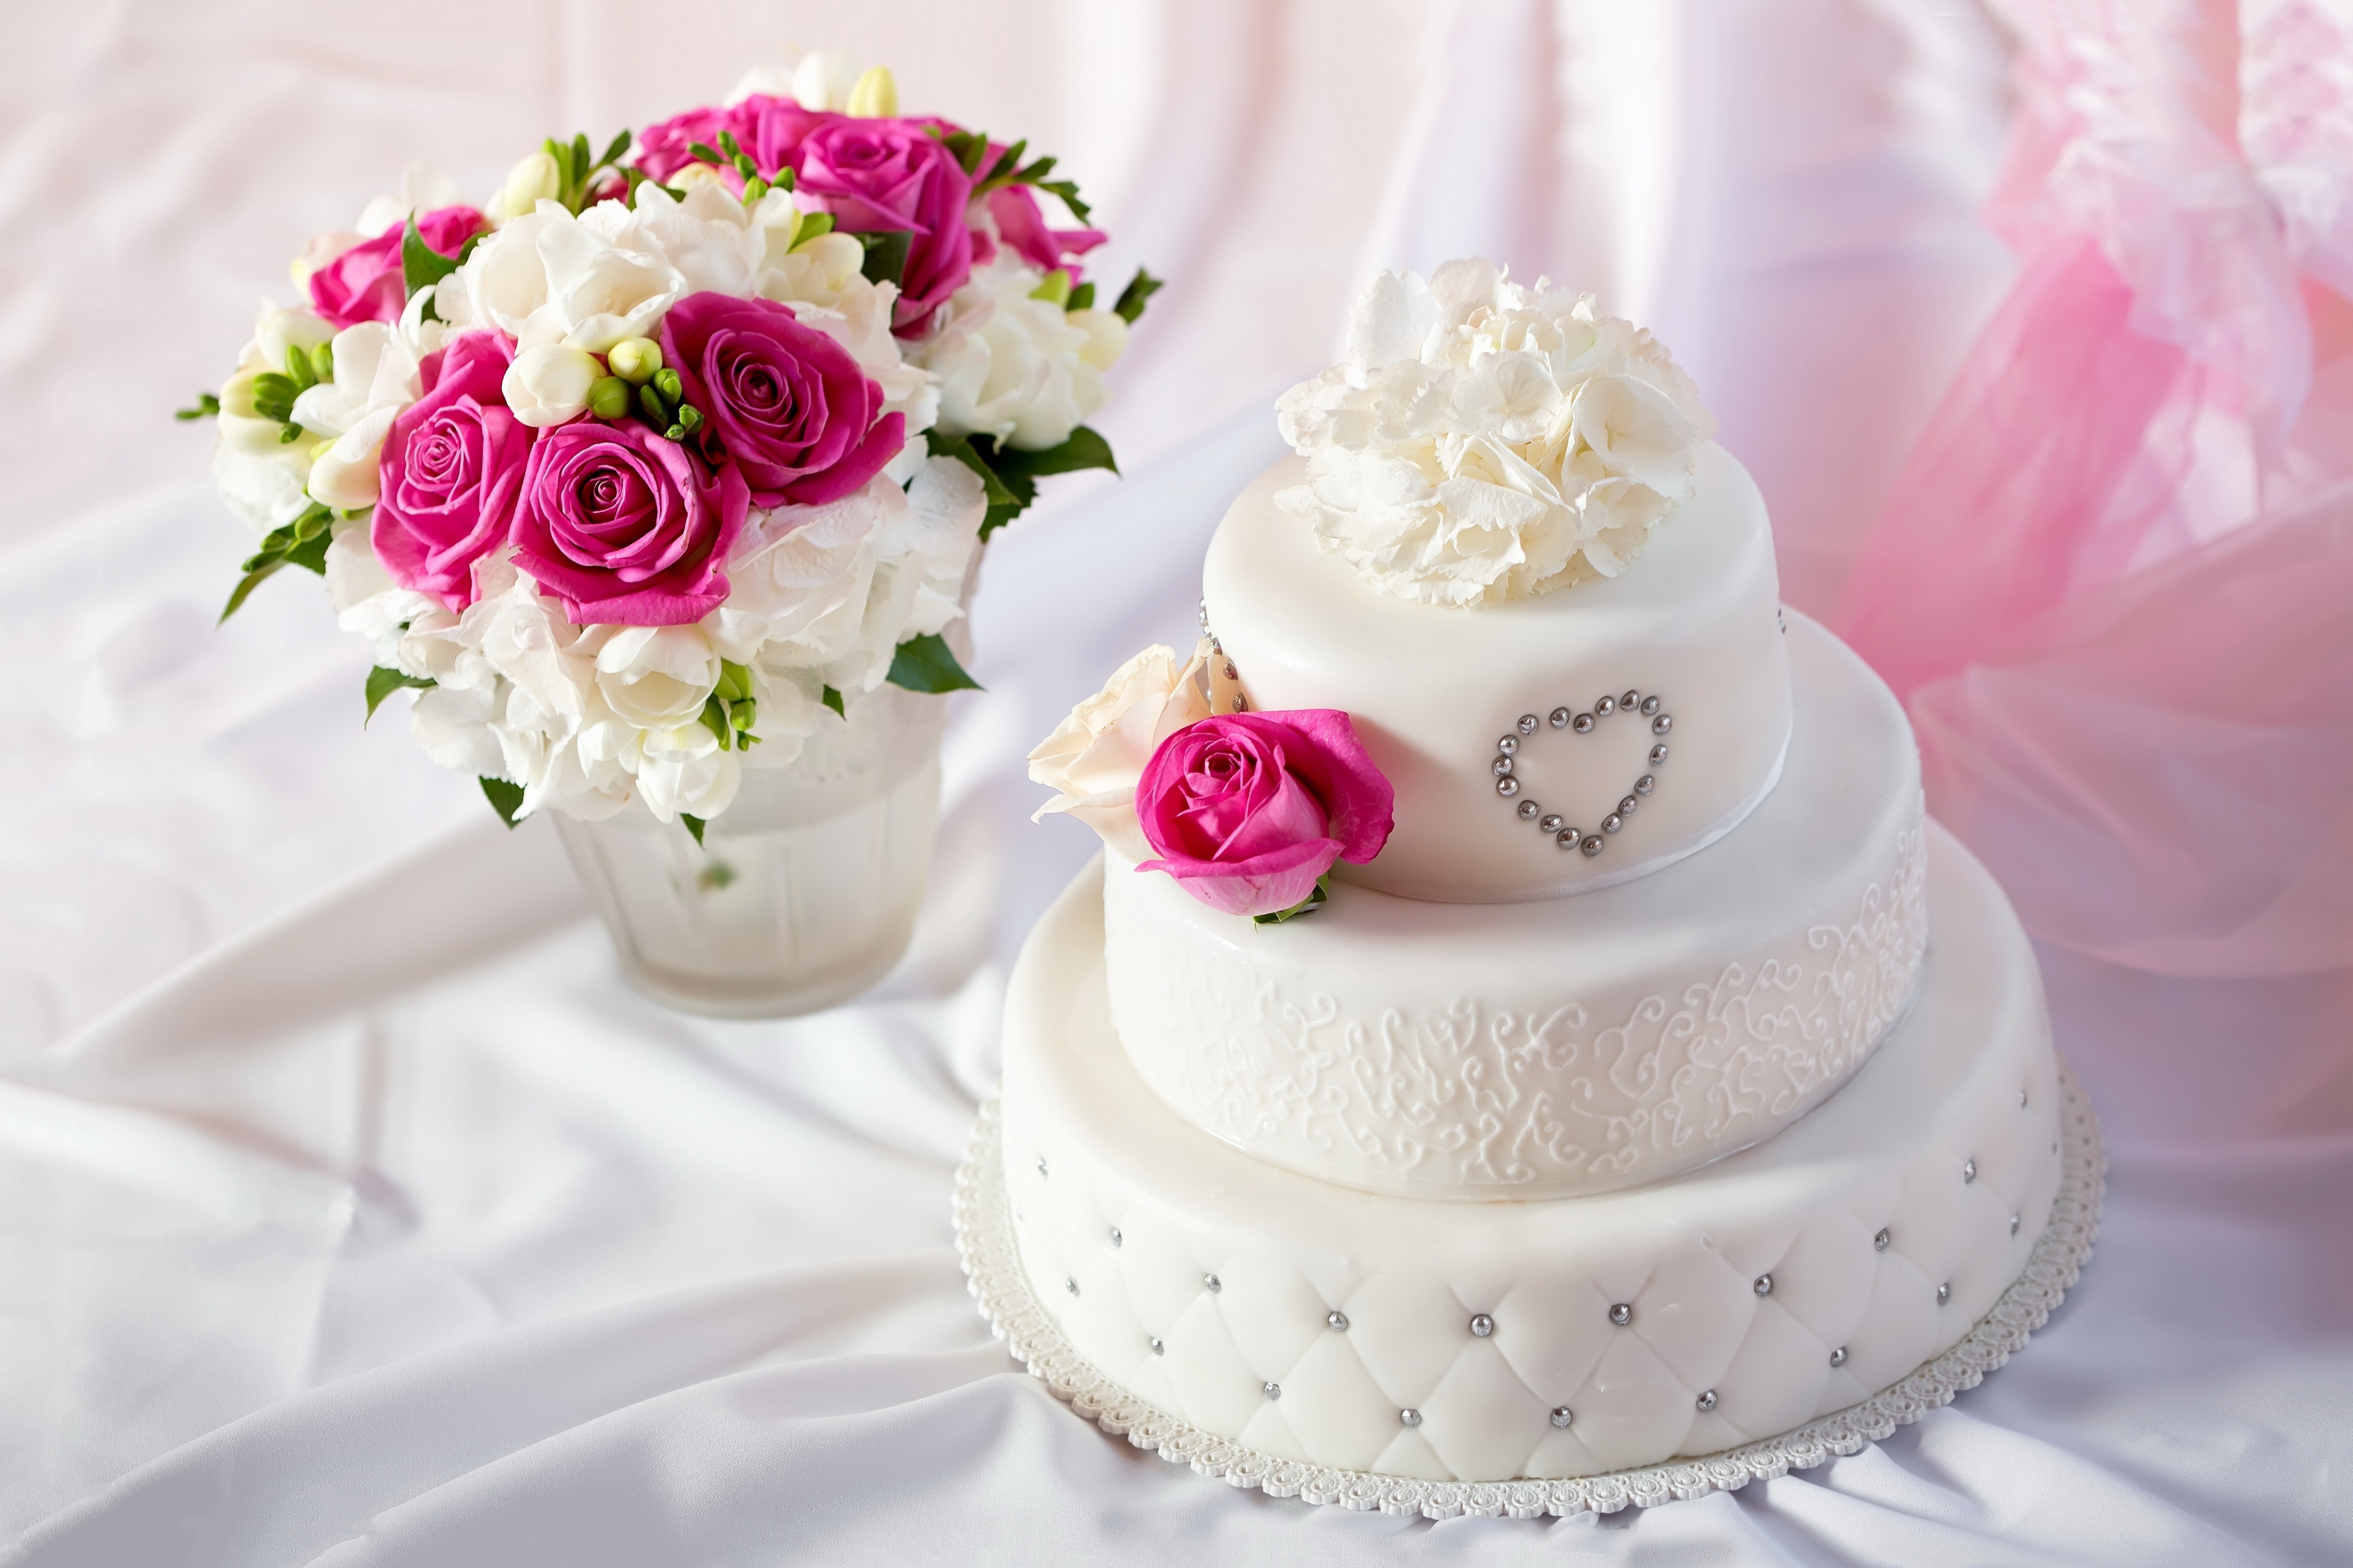 Bánh cưới không chỉ là một món ăn quan trọng trong đám cưới, mà còn là sản phẩm nghệ thuật dành cho những cặp đôi yêu đời, yêu sự đẹp đẽ. Những chiếc bánh cưới đầy màu sắc, tinh tế và độc đáo sẽ khiến cho khách mời không thể rời mắt và không muốn mở miệng ăn.